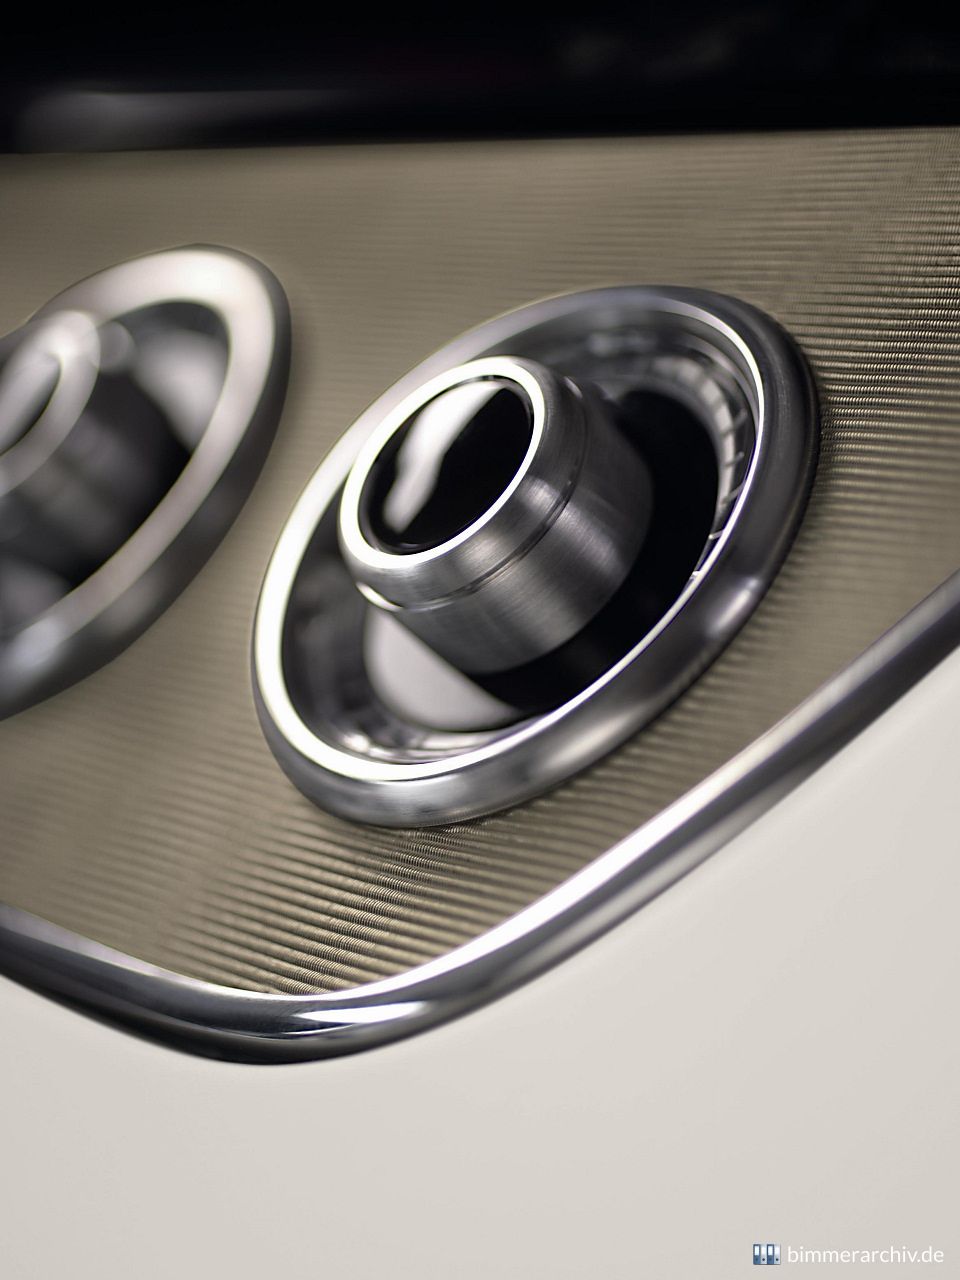 BMW Concept CS - Bedienelemente